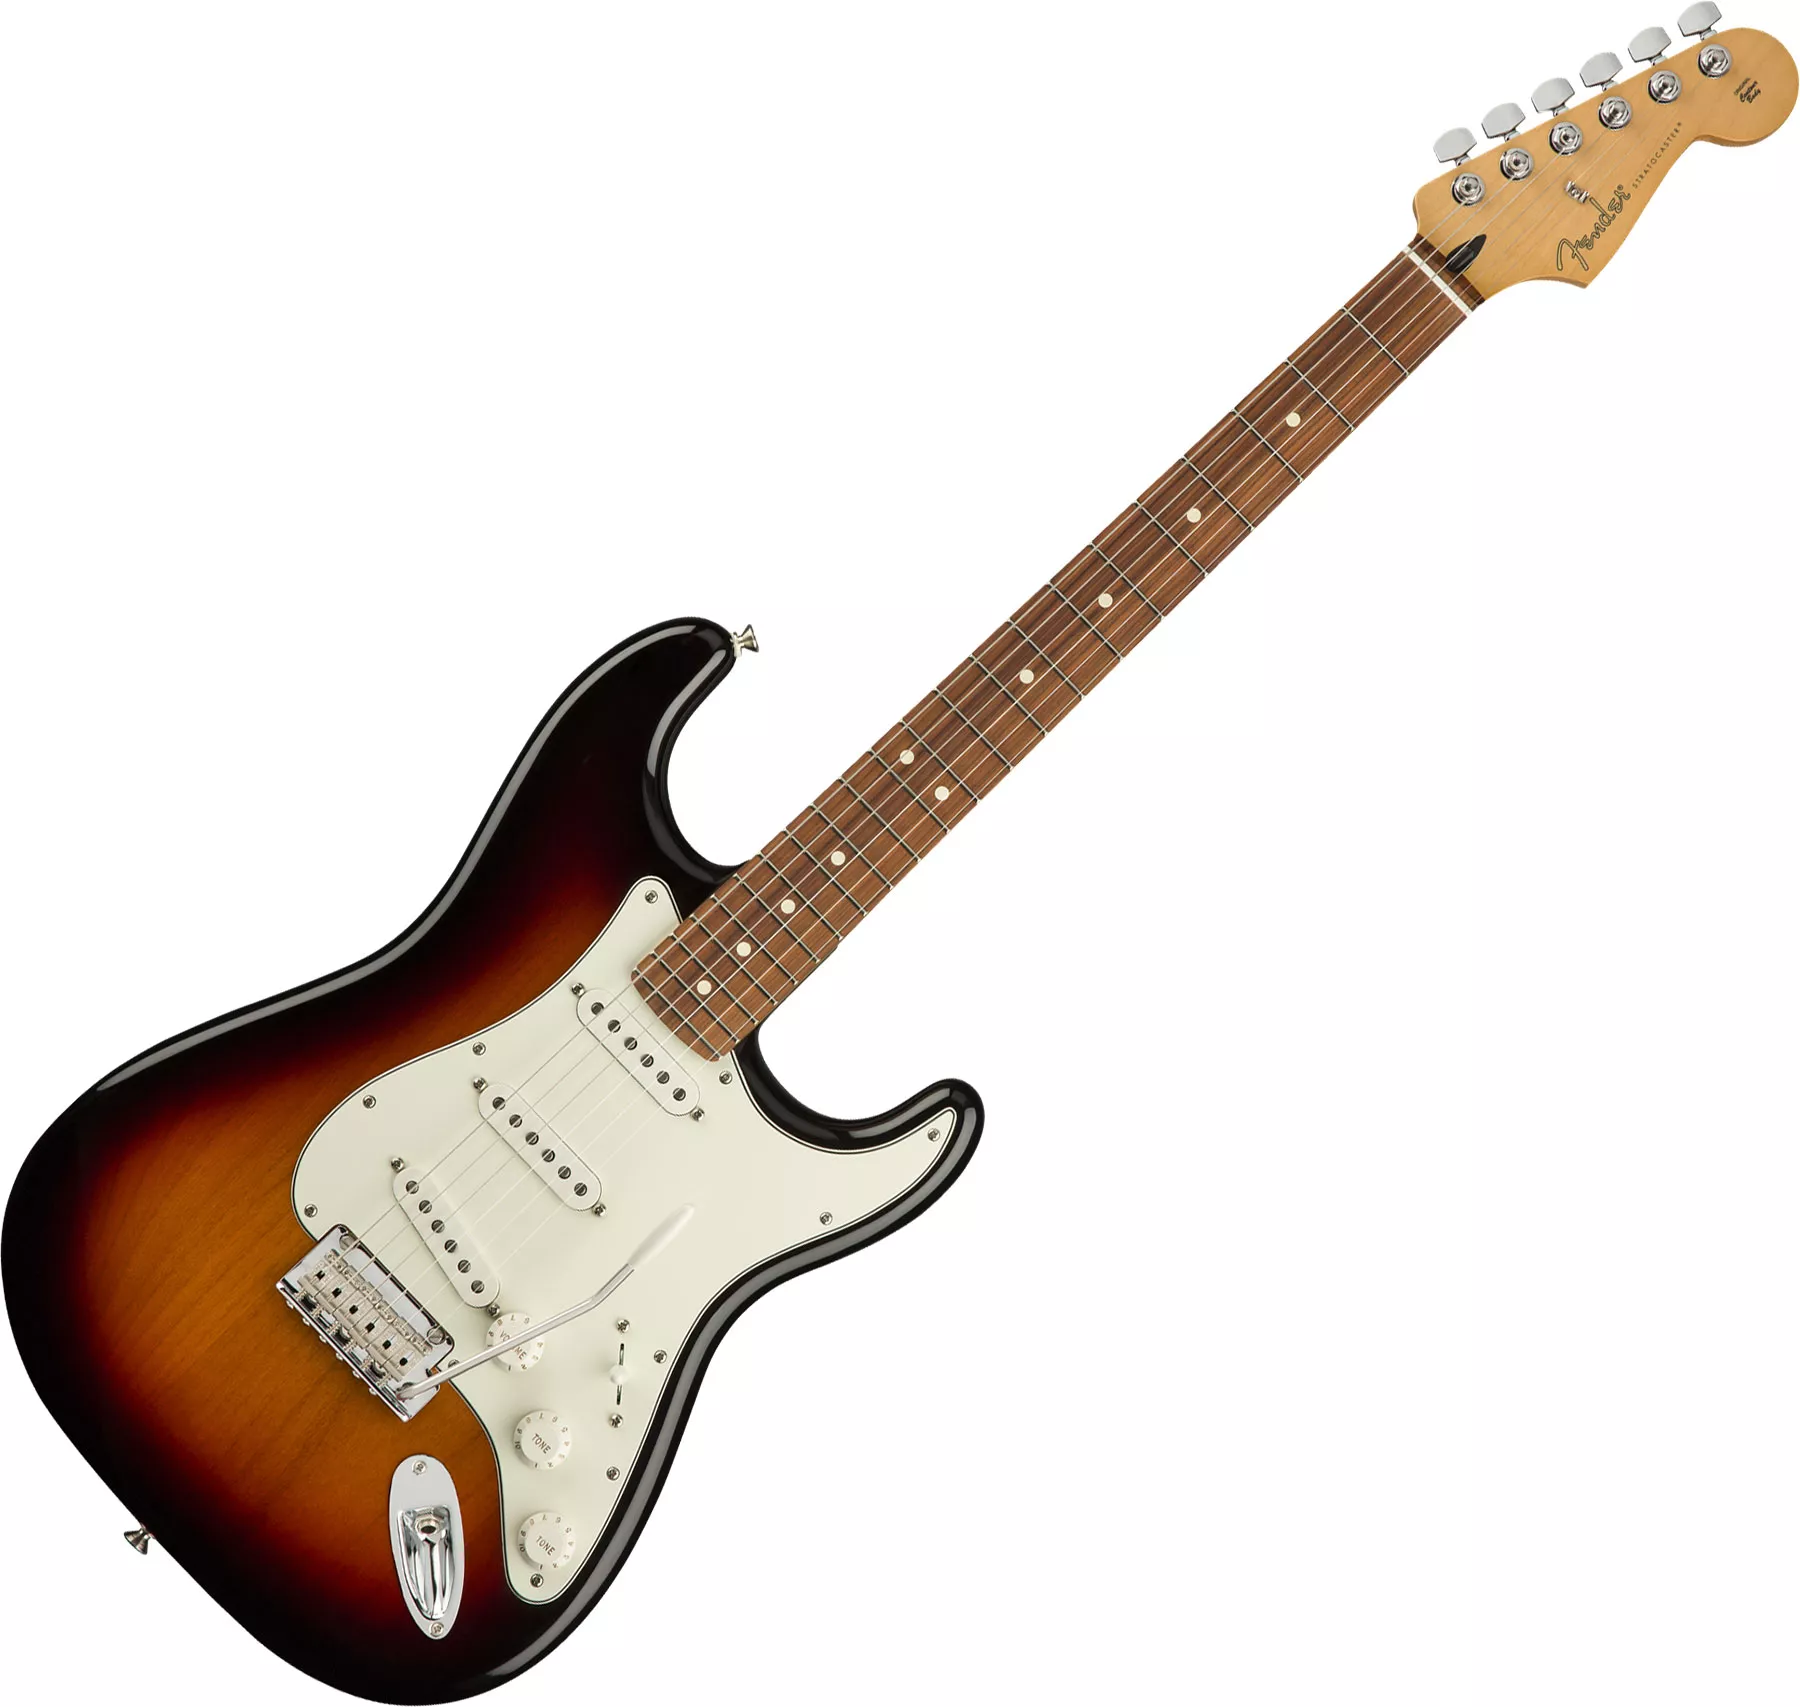 Player Stratocaster (MEX, PF) - 3-color sunburst Guitare électrique forme  str Fender